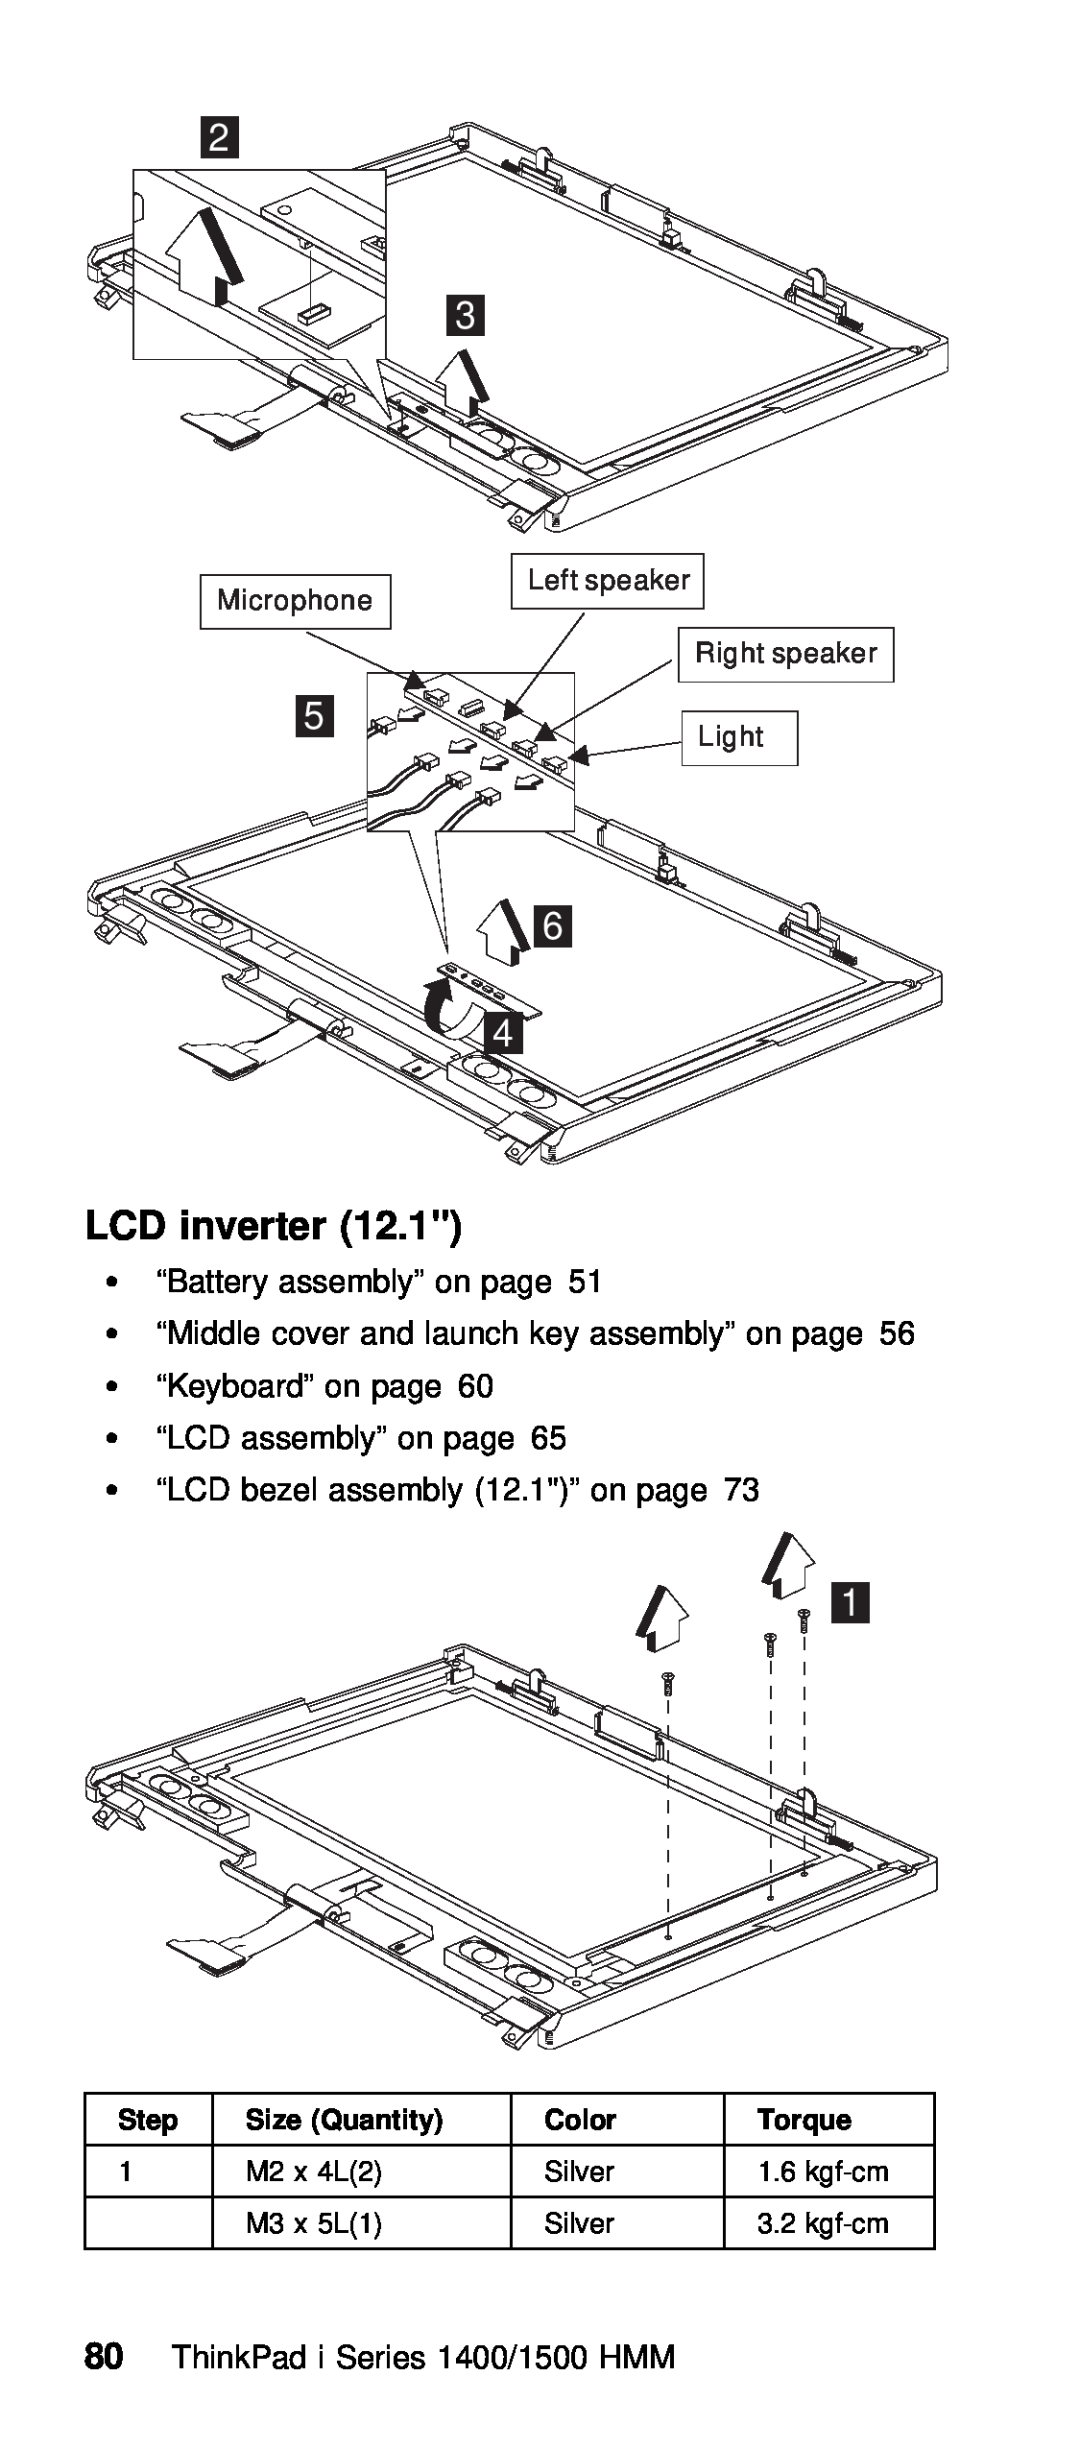 IBM Series 1500, Series 1400 manual inverter, 12.1 